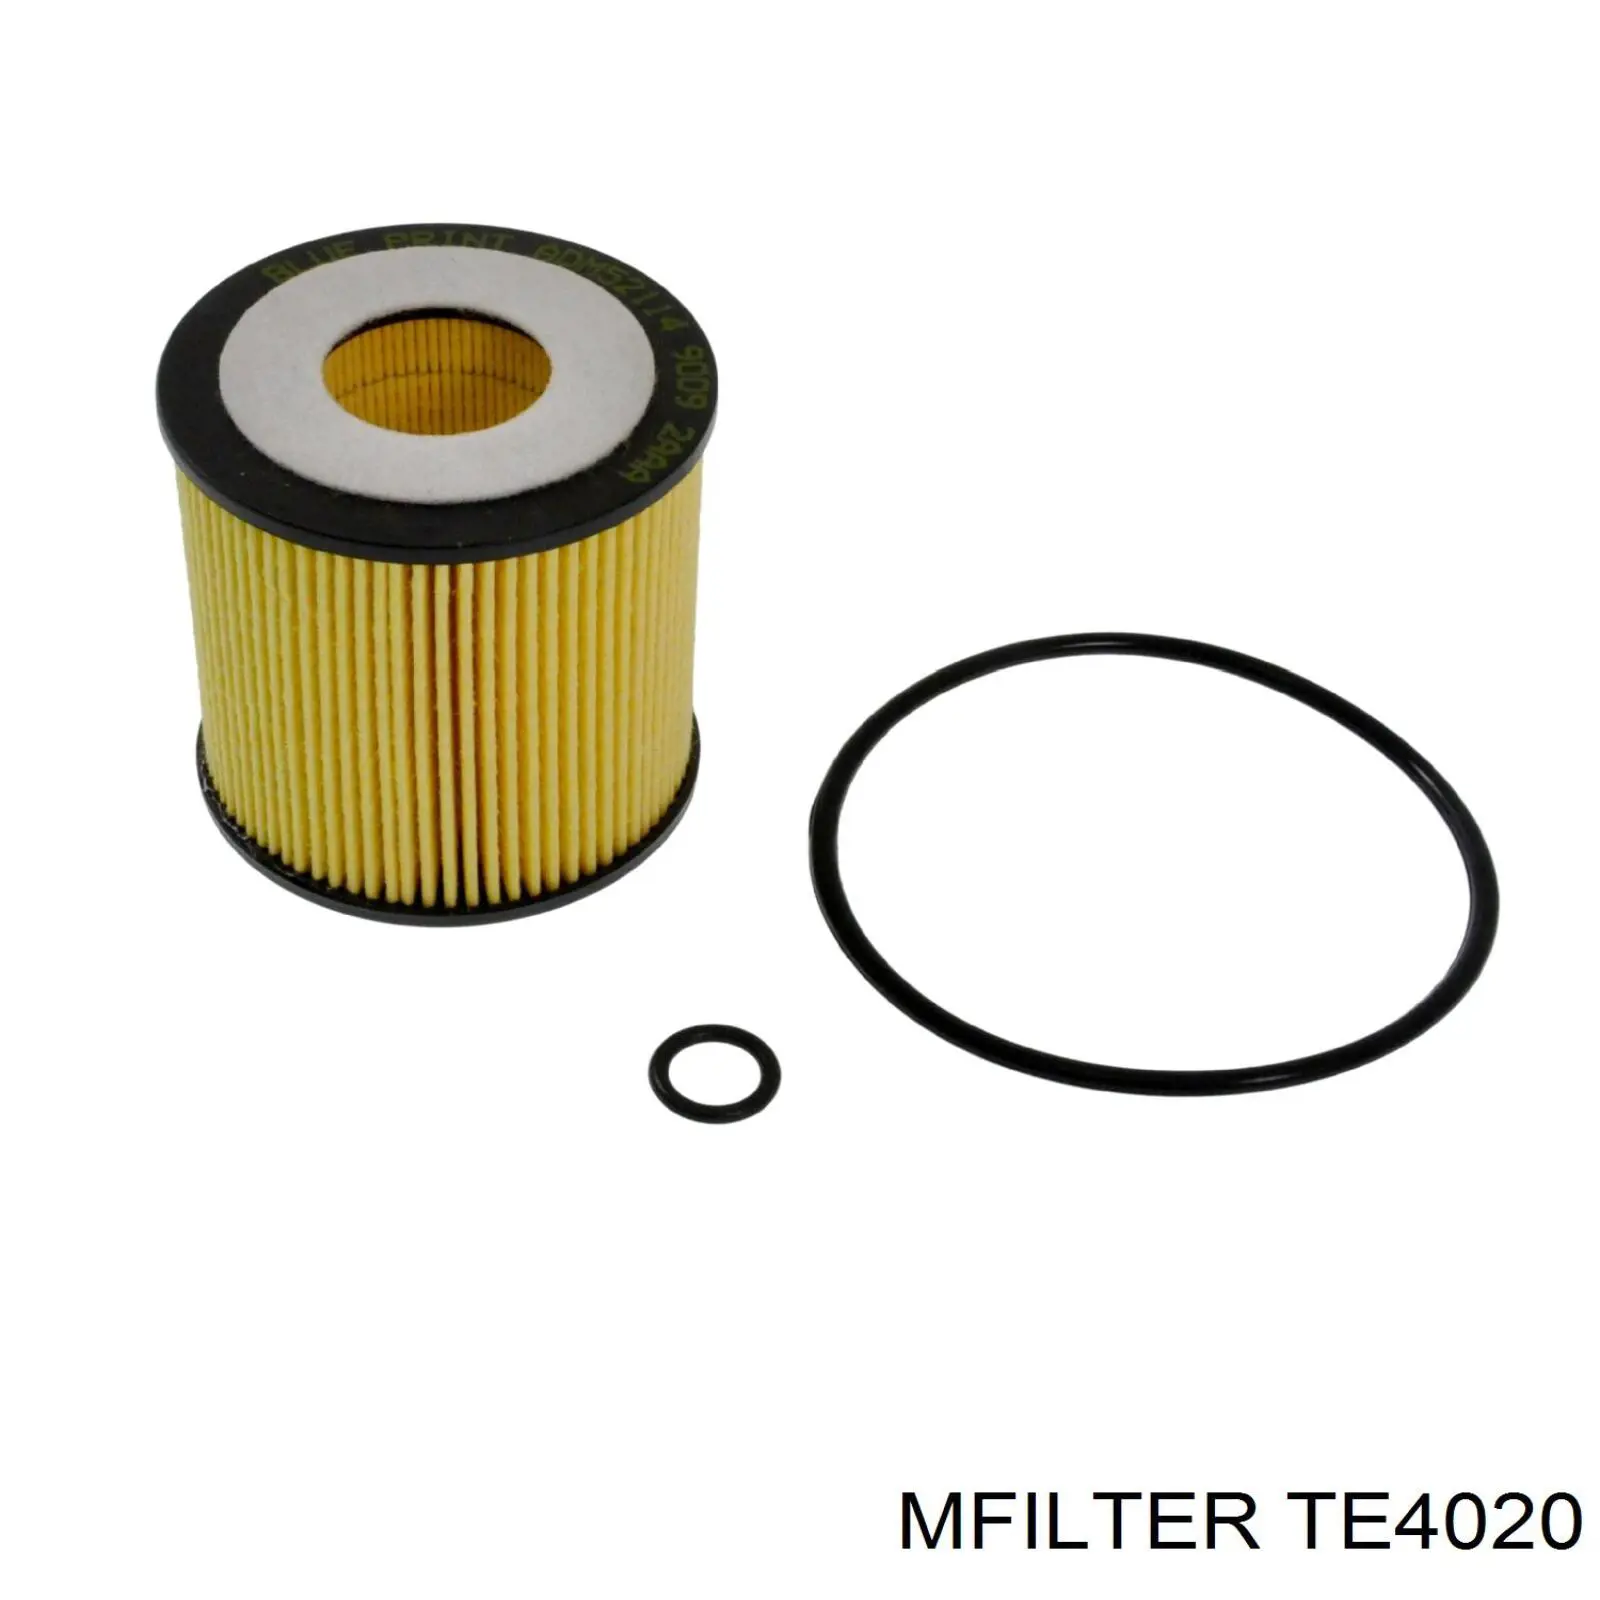 TE 4020 Mfilter filtro de aceite